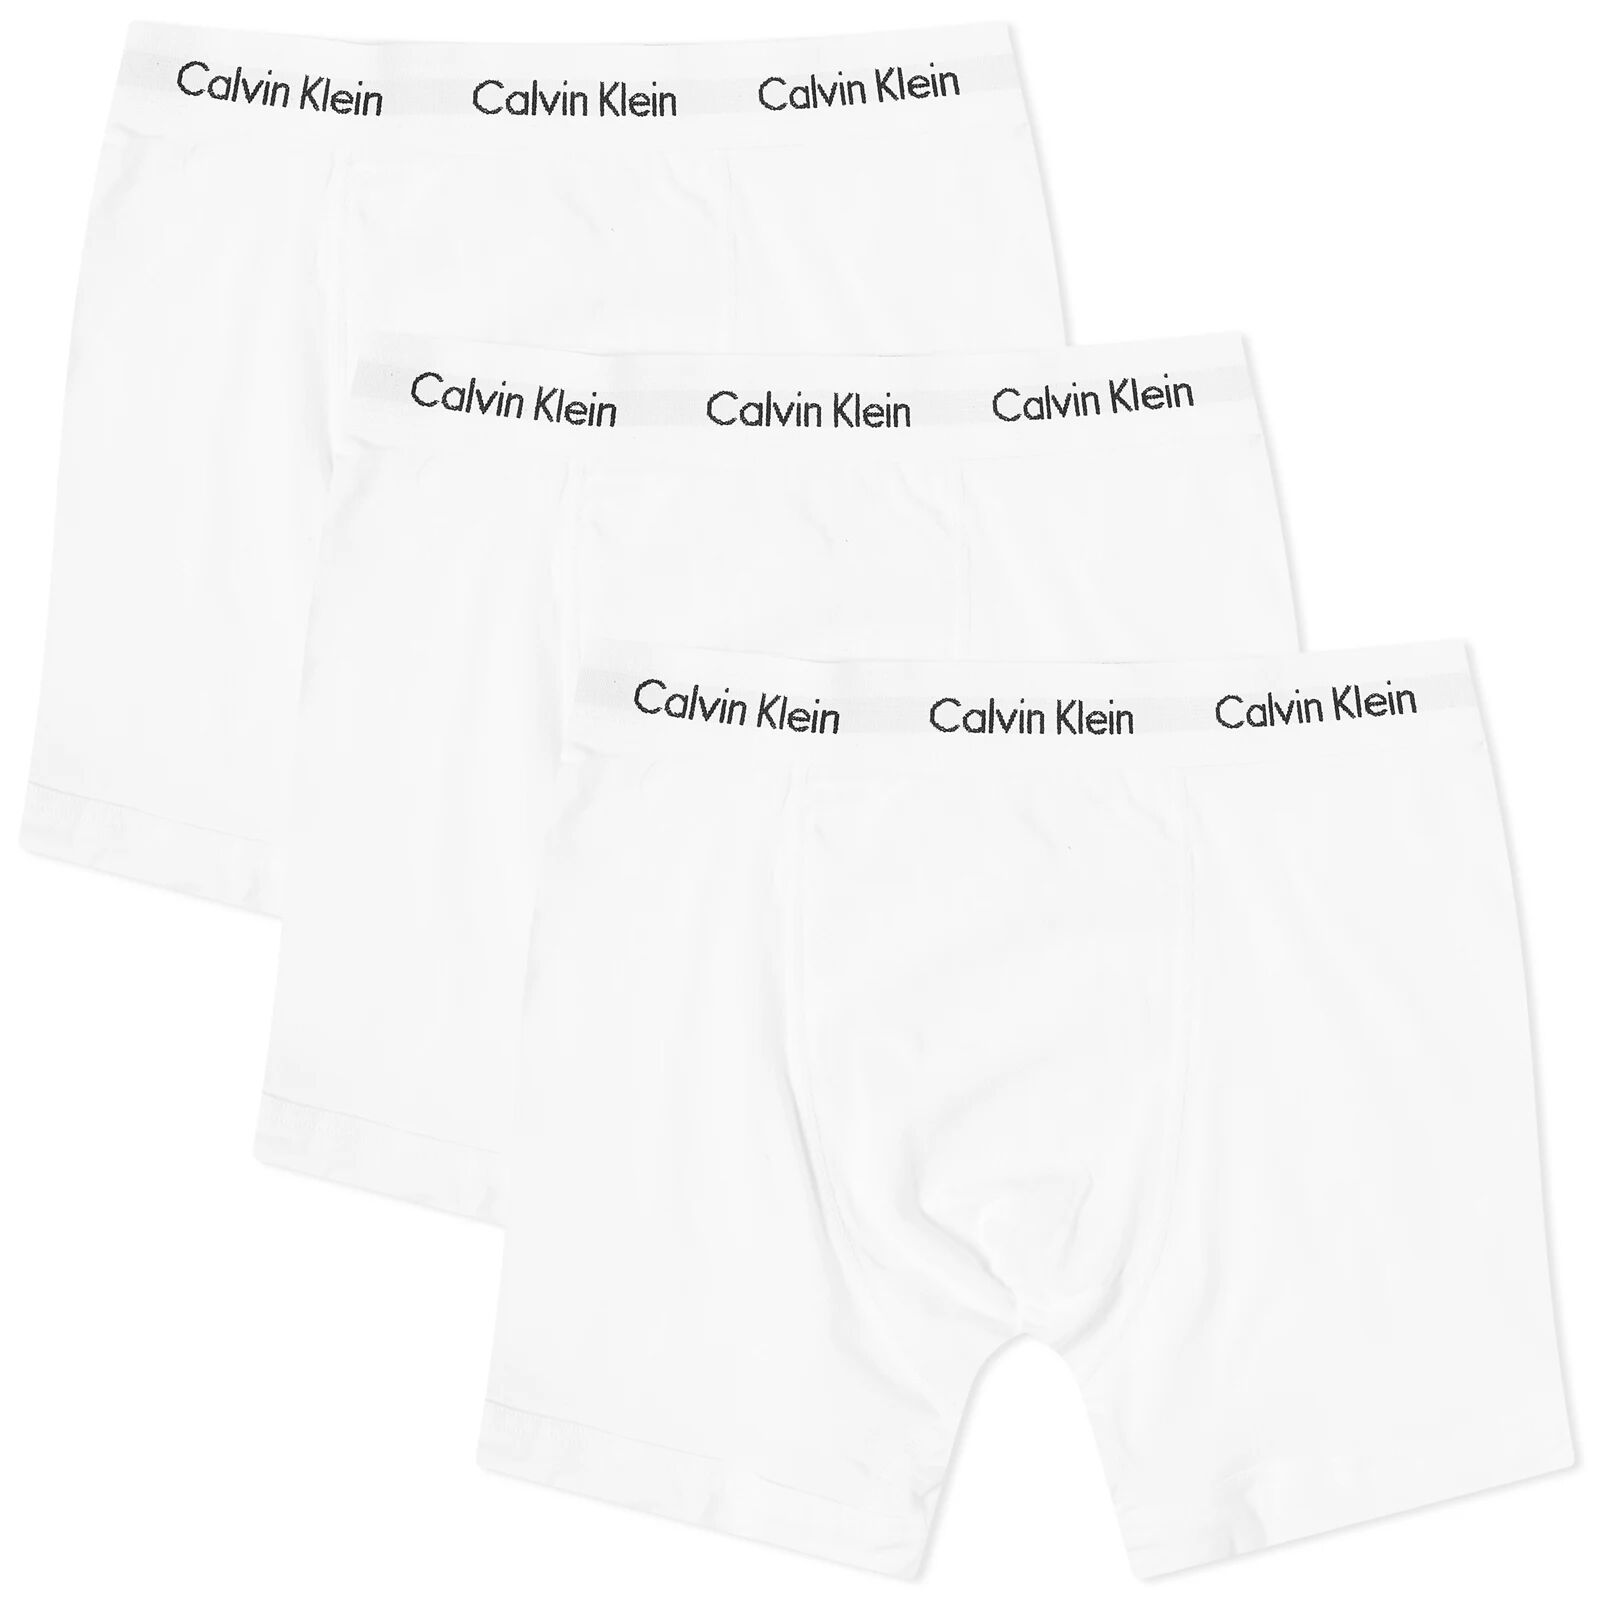 Calvin Klein Men's CK Underwear Boxer Brief - 3 Pack in White, Size Small